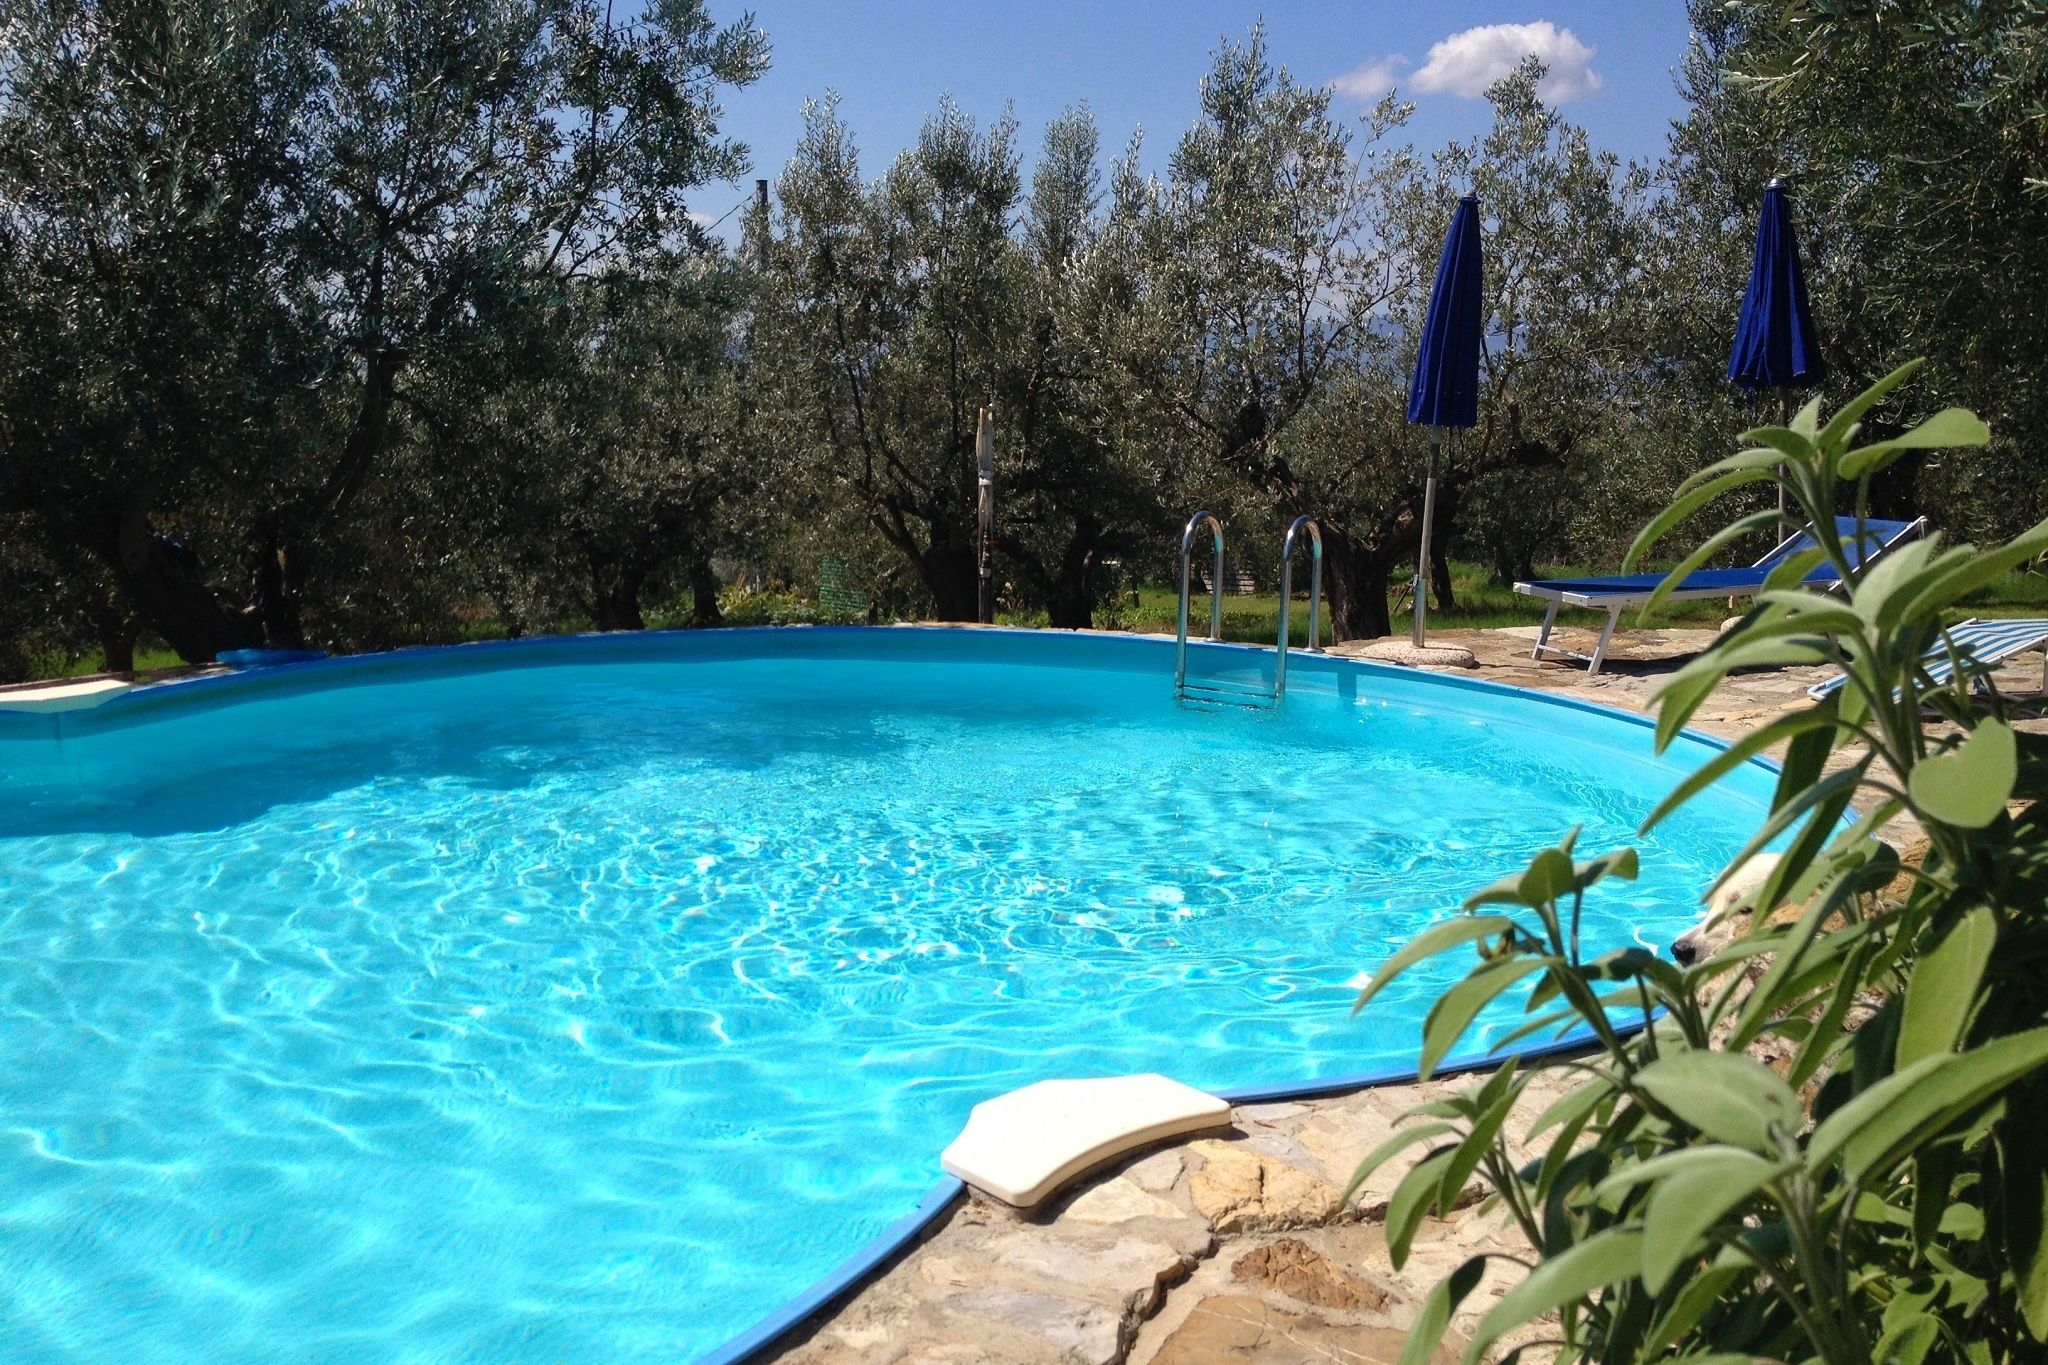 Maison de vacances avec piscine près de Florence